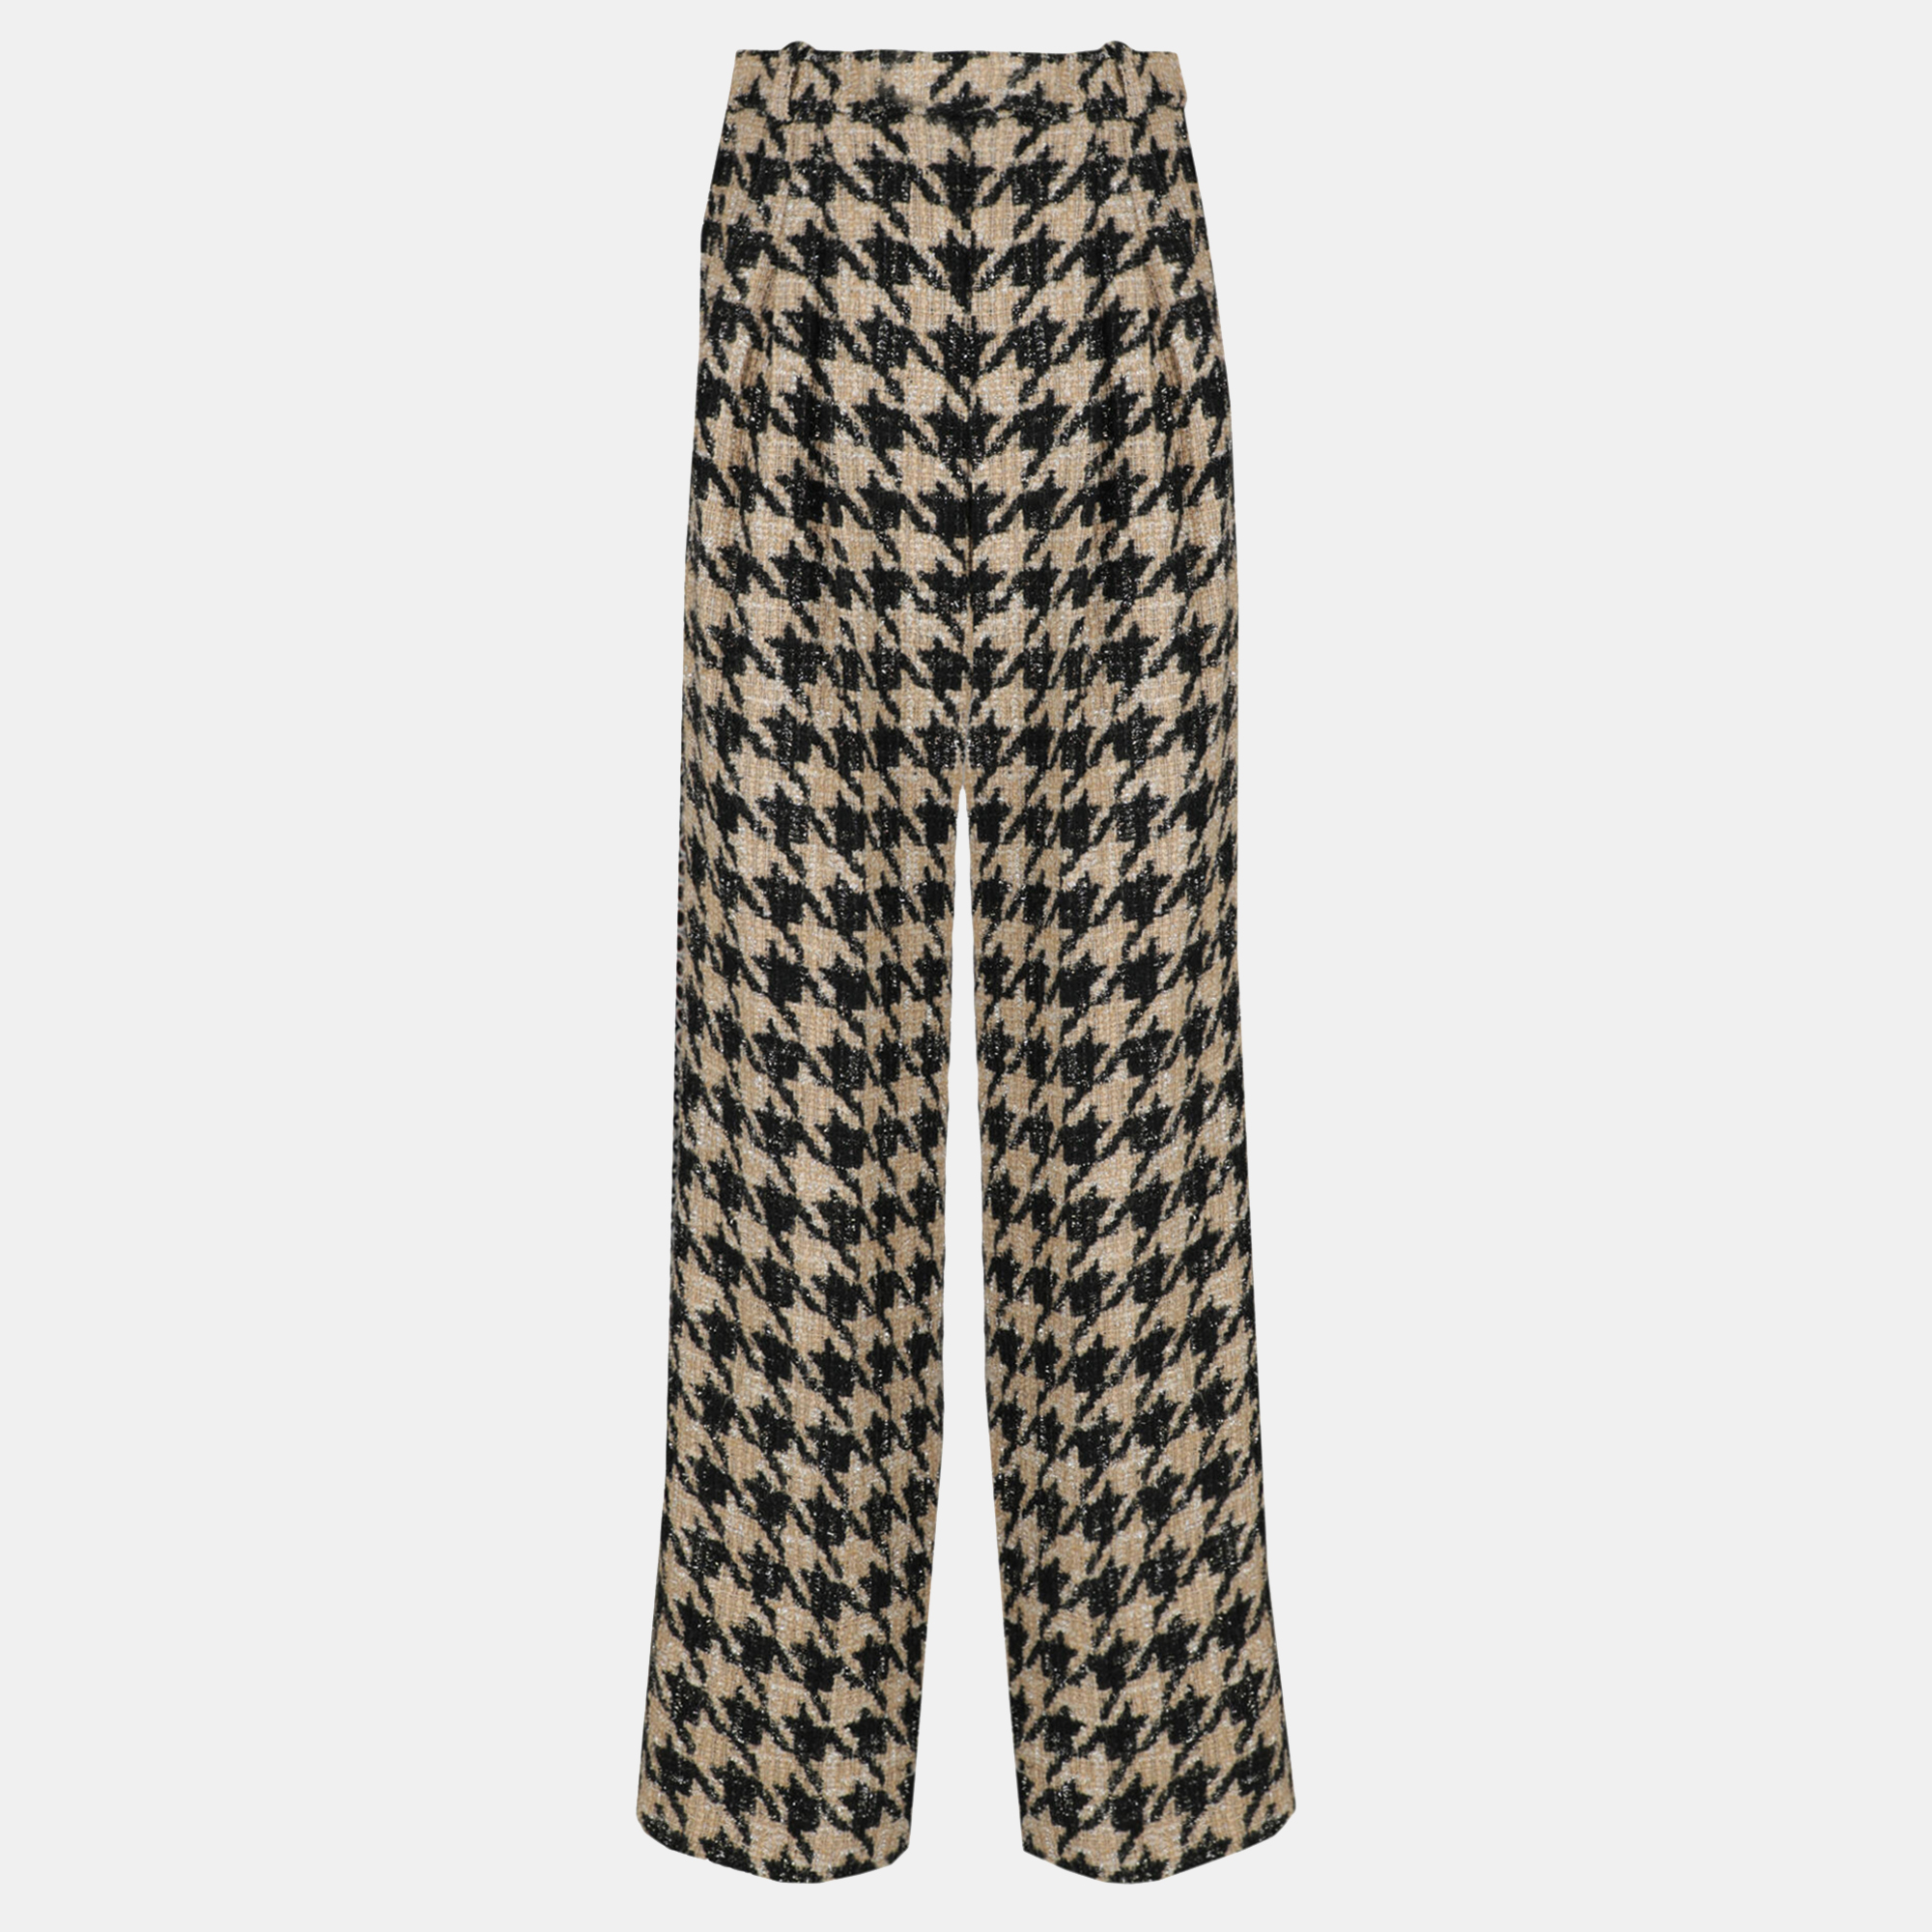 Chanel  Women's Synthetic Fibers Trousers - Beige - M